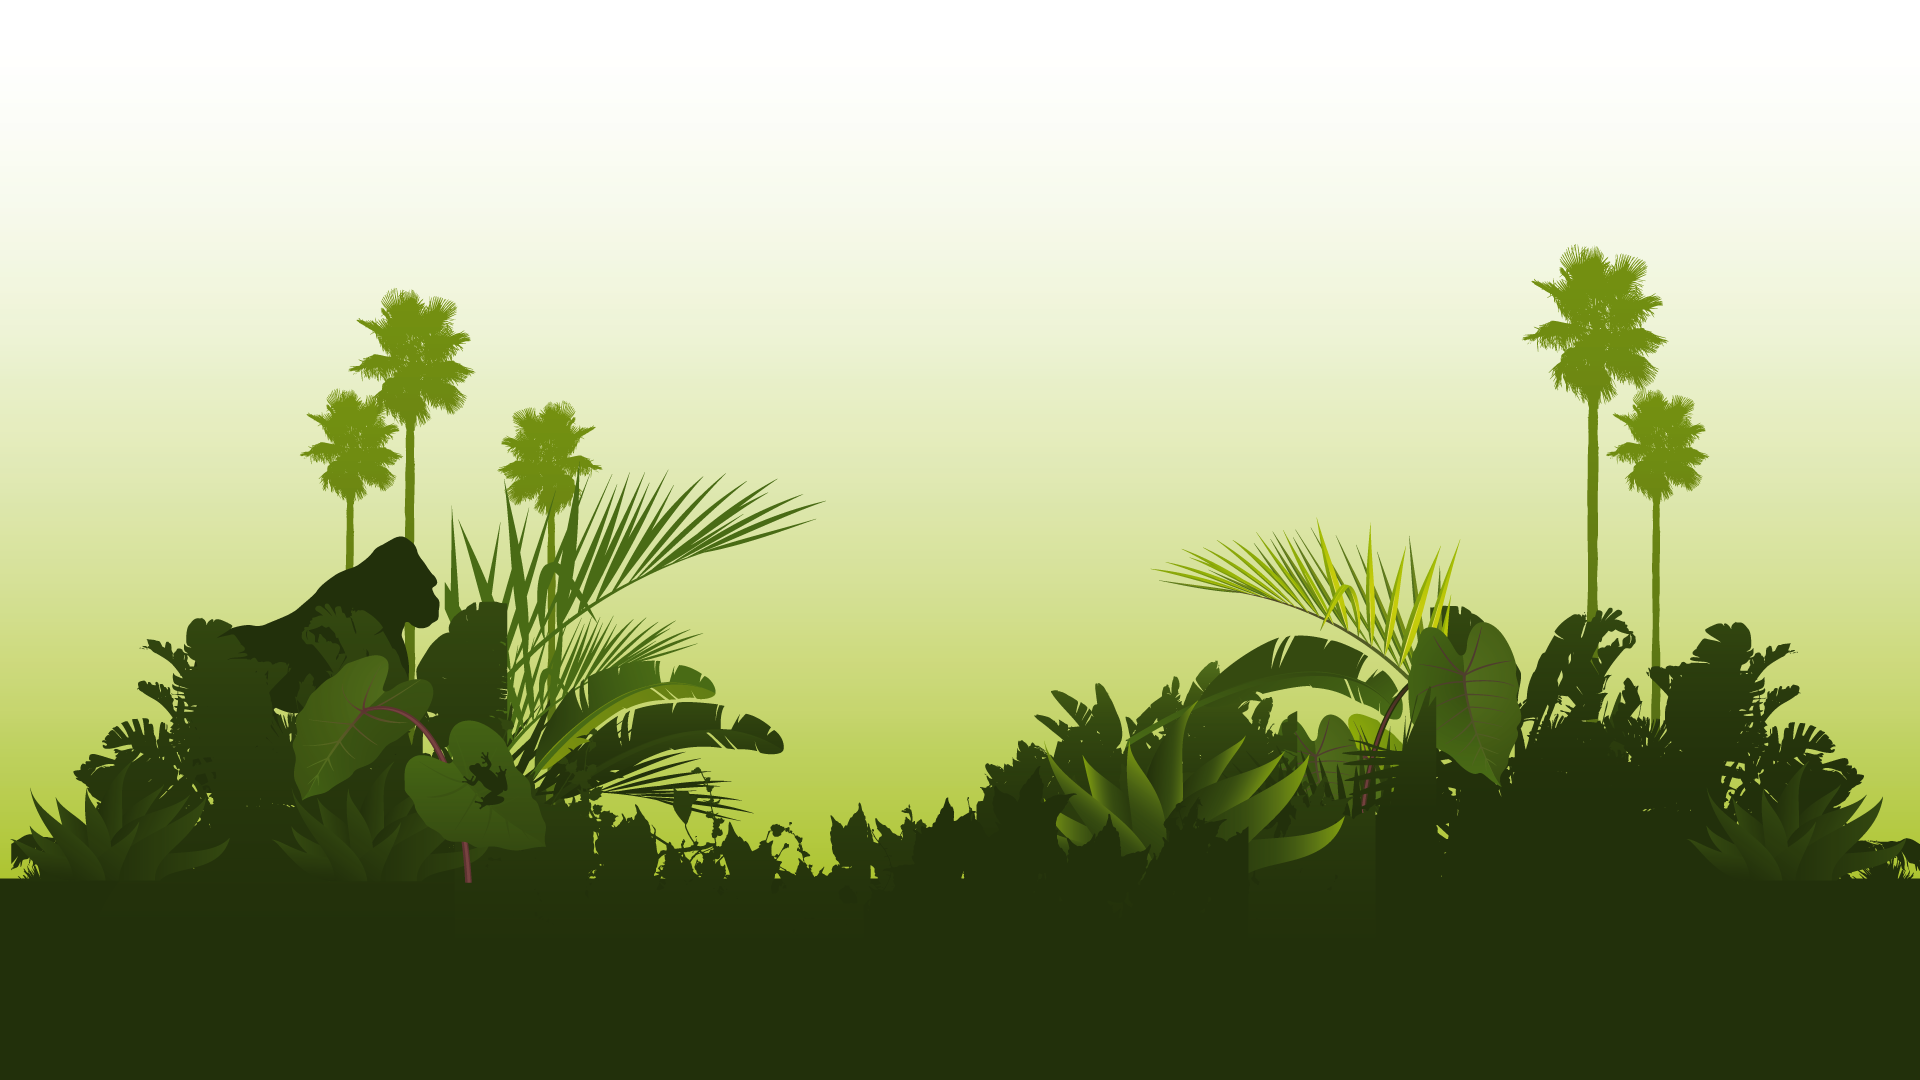 Free download Images For Jungle Wallpaper Desktop [1920x1080] for your  Desktop, Mobile & Tablet | Explore 73+ Jungle Wallpaper | Jungle  Background, Prehistoric Jungle Wallpaper, Jungle Book Wallpaper